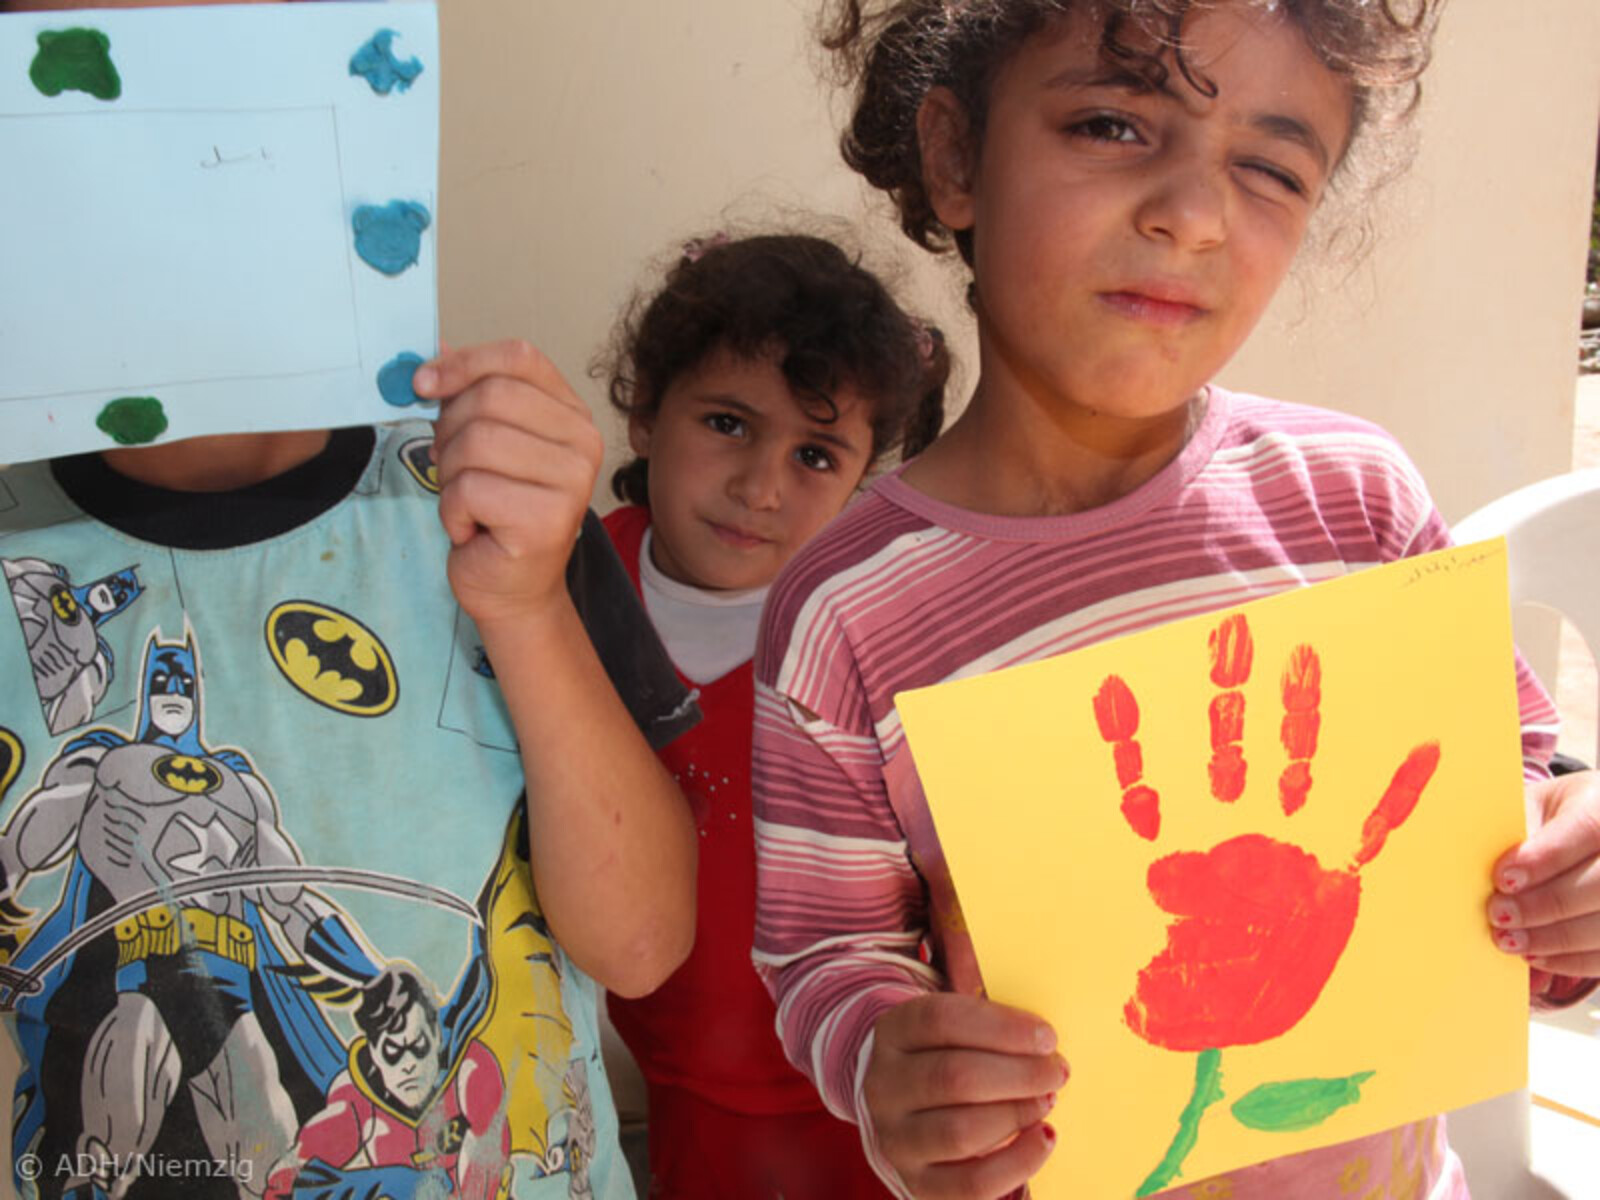 World Vision ist seit November 2012 zur Unterstützung syrischer Flüchtlinge im Libanon aktiv. Im Mittelpunkt steht die Verteilung von Non-Food-Items, wie Öfen und Heizmaterial und Kinderzentren, die den Flüchtlingskindern helfen ihre traumatischen Erlebni